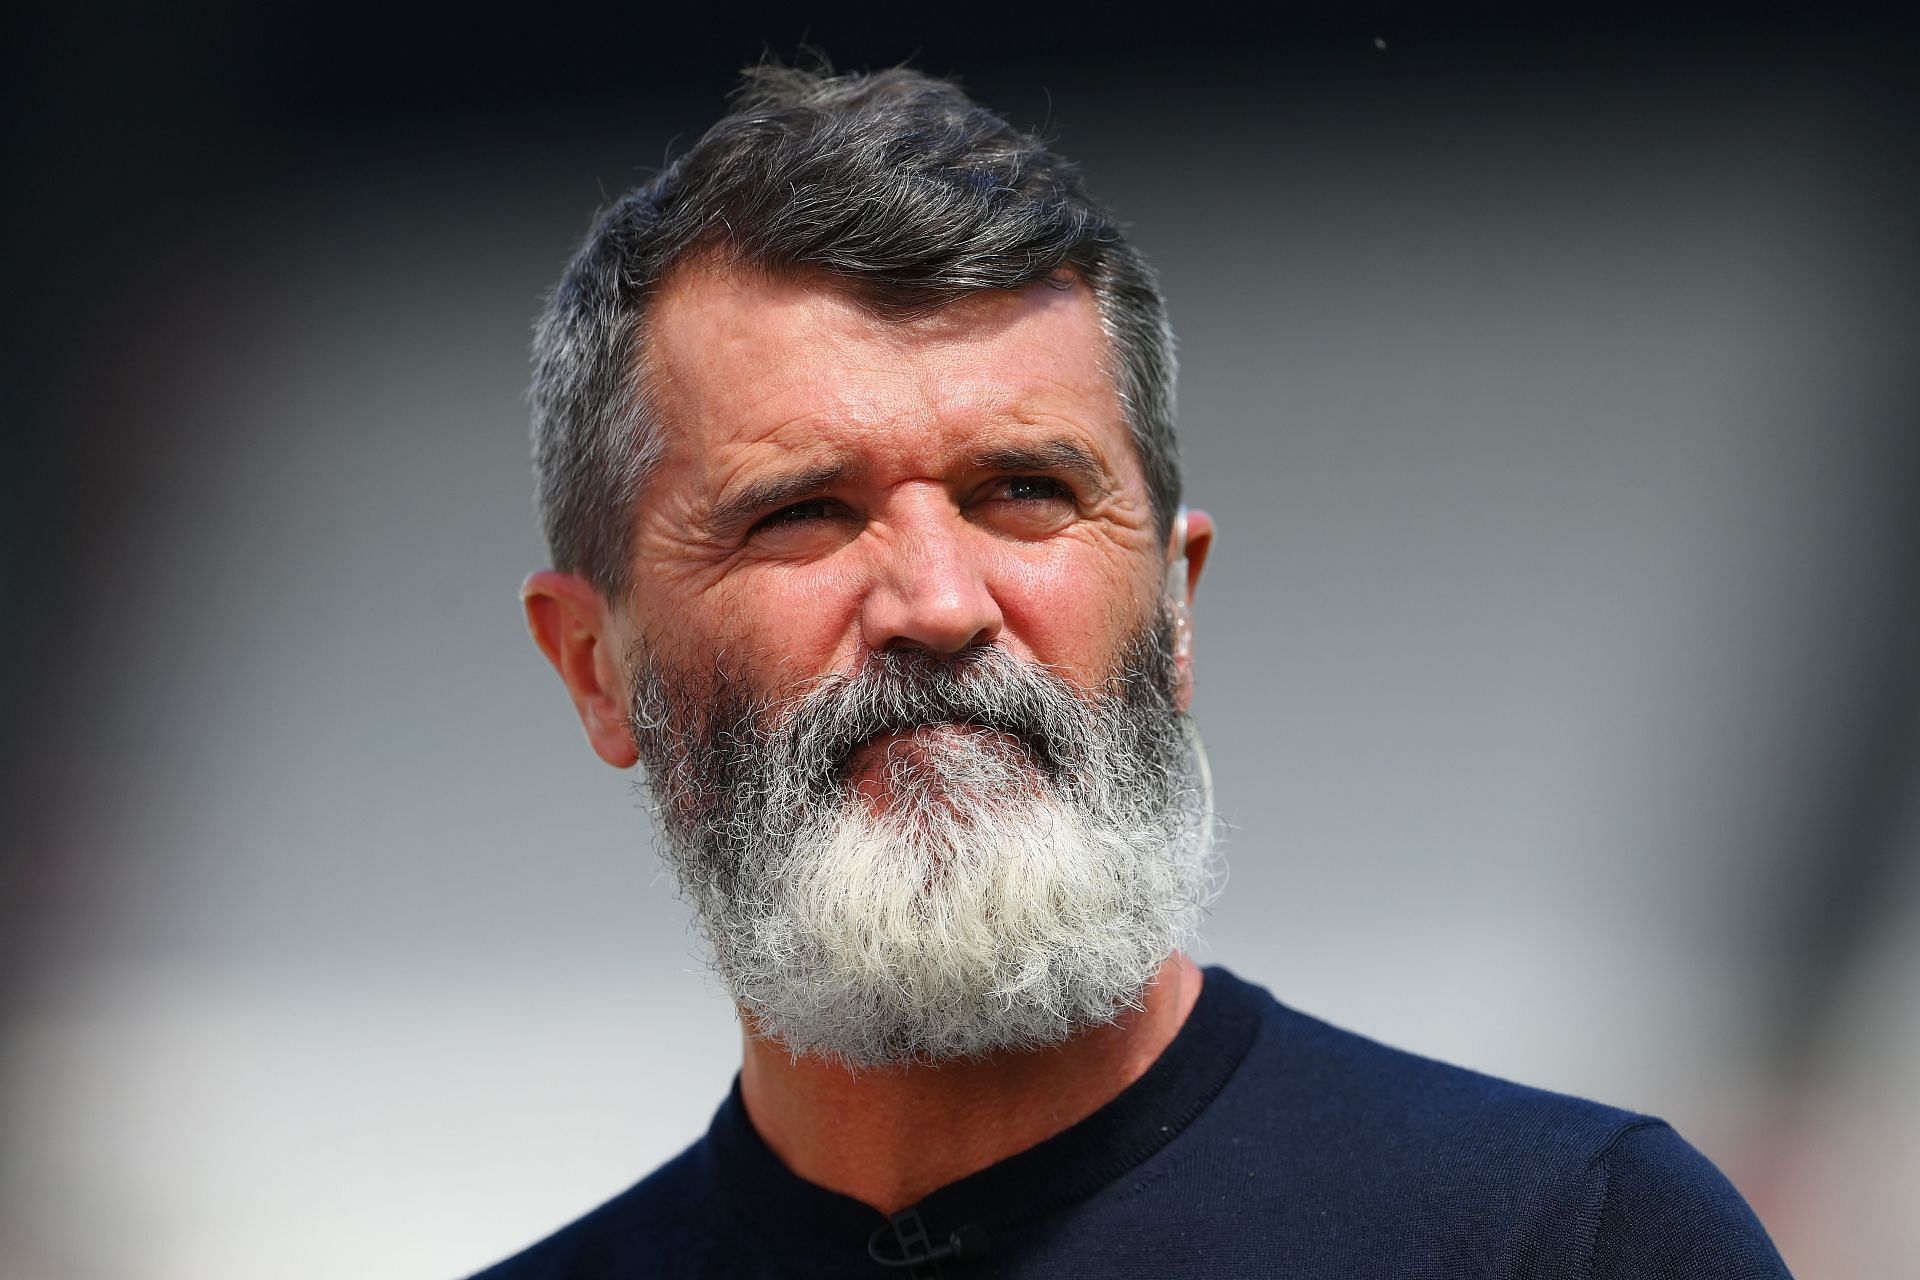 Former soccer star Roy Keane